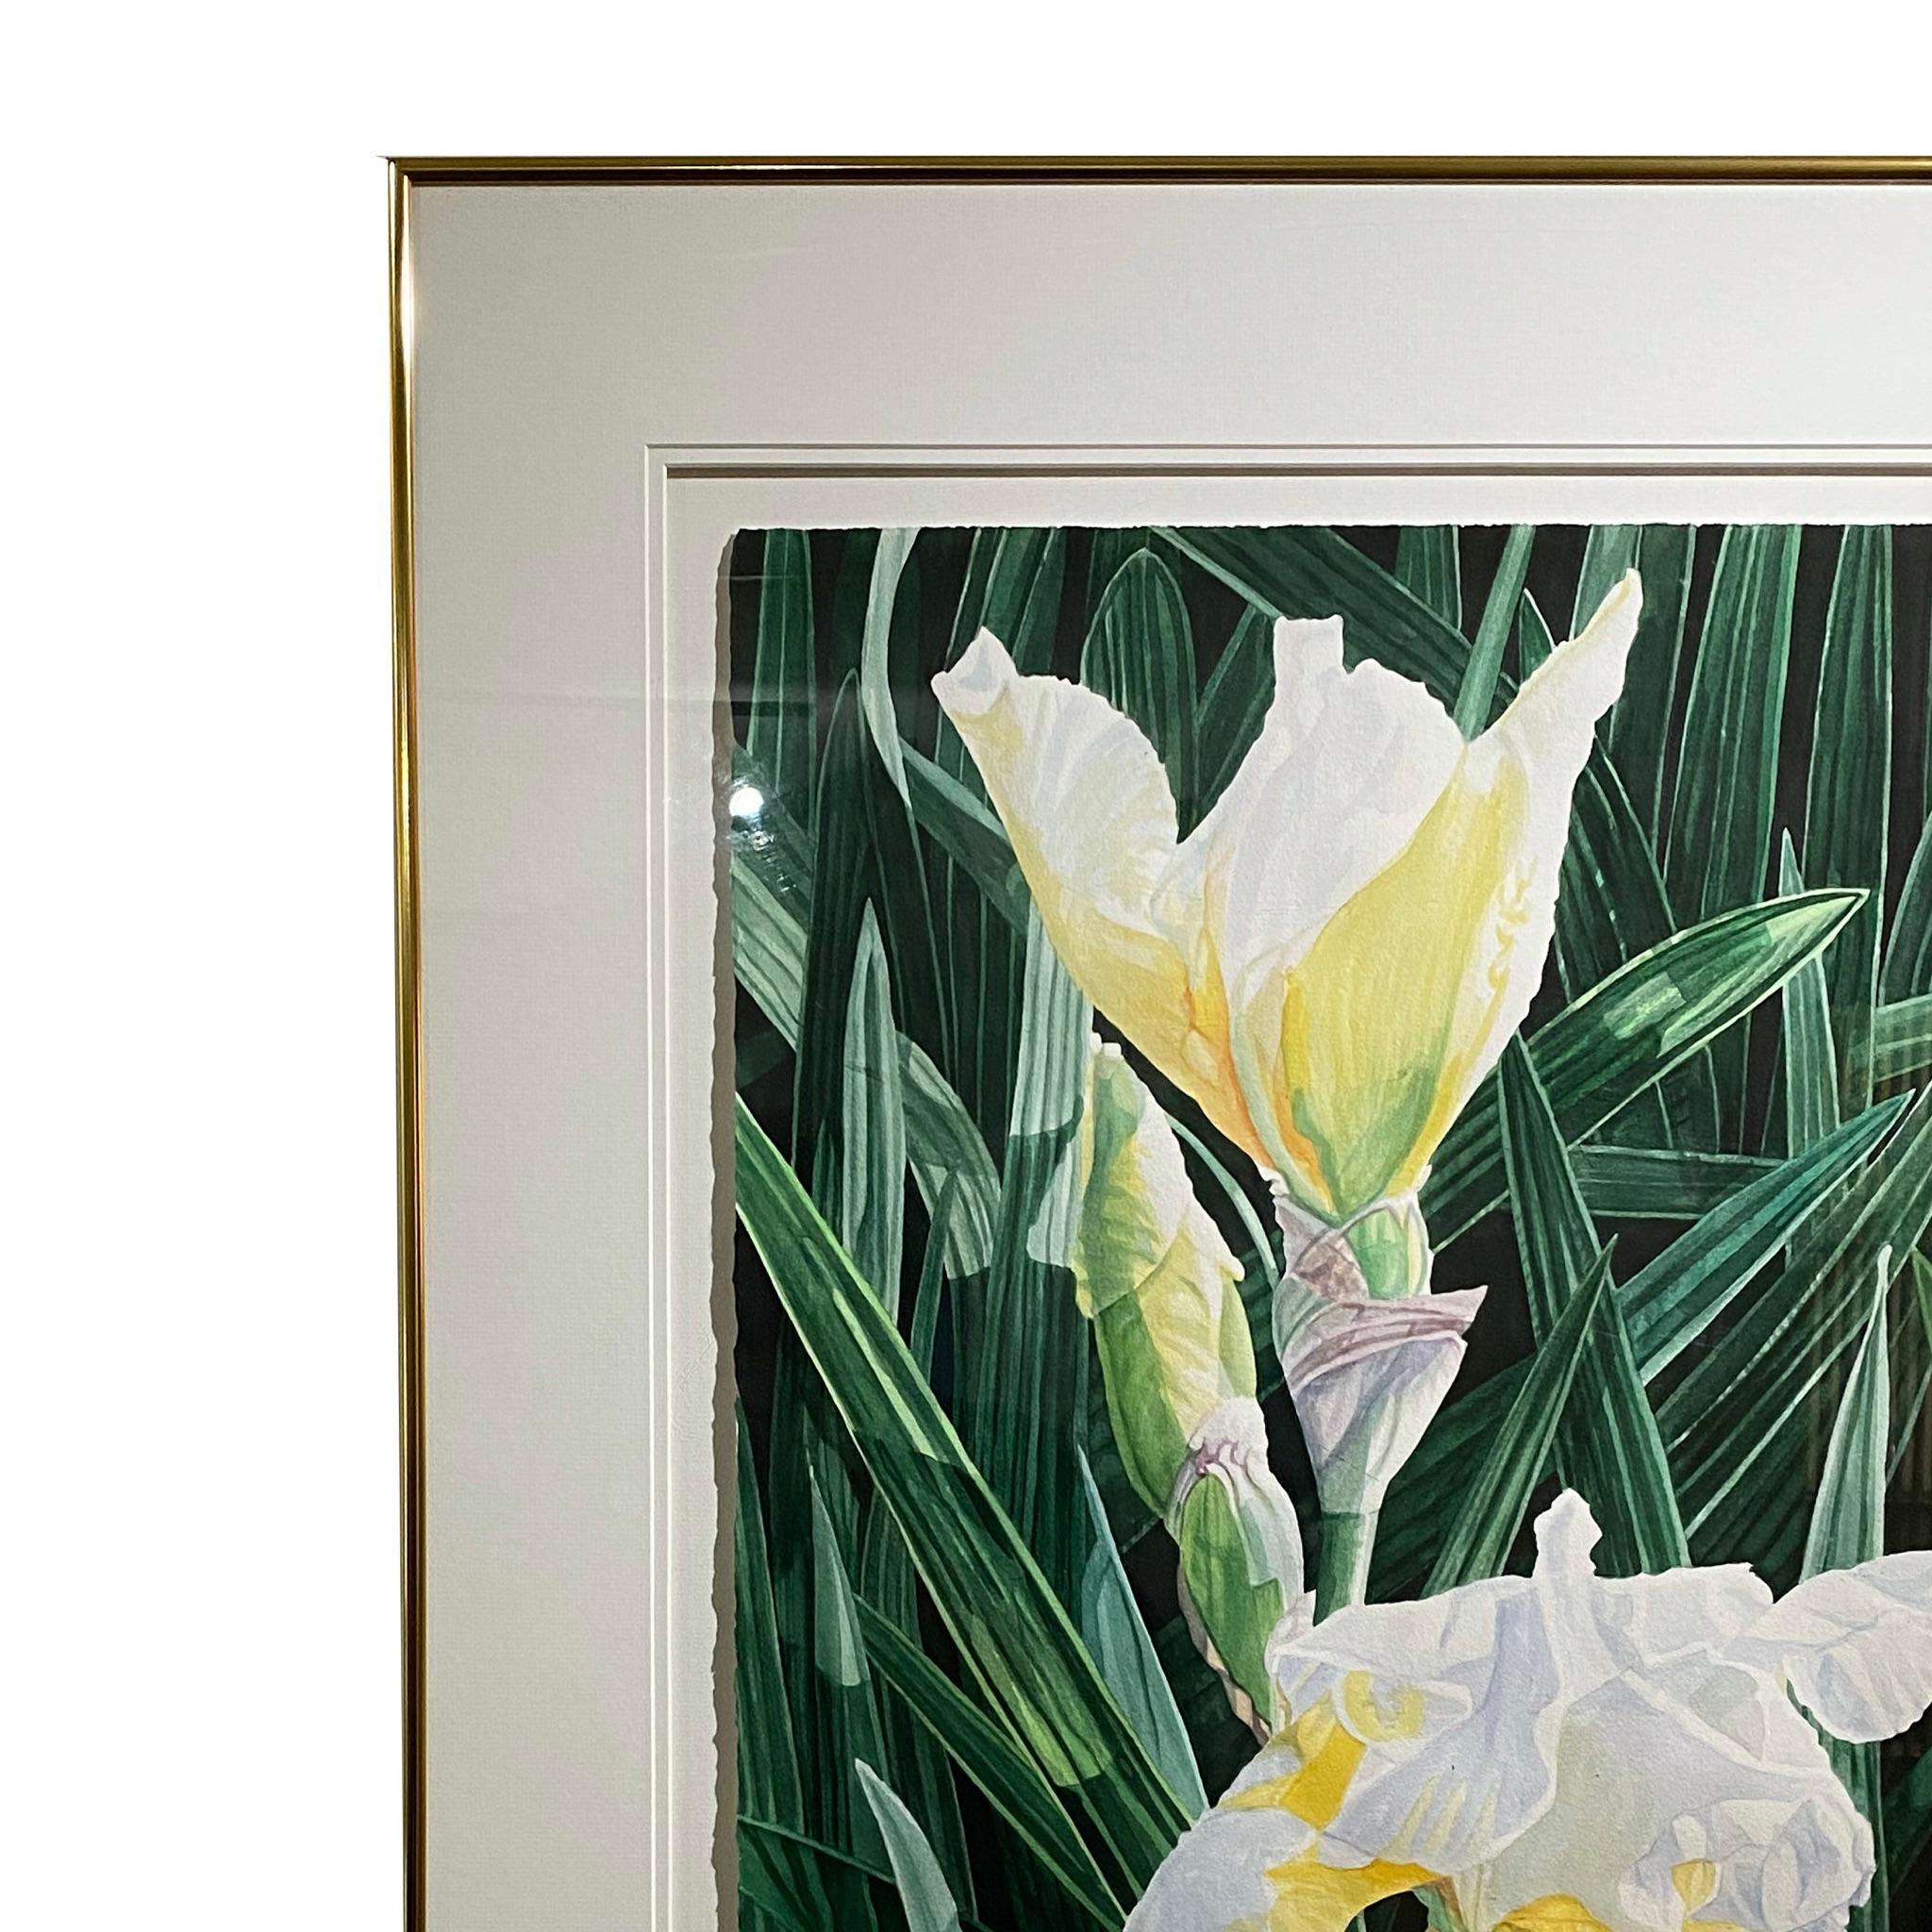     Sehr schönes Aquarell von weißer Iris und schönen grünen Blättern, die eine Stimmung von sauberer floraler Eleganz schaffen.
 Helen Burkett FSWS, FWS, SWS, NWS stammt ursprünglich aus Arlington, VA, und zog 1974 nach Sarasota, FL, wo sie ihr